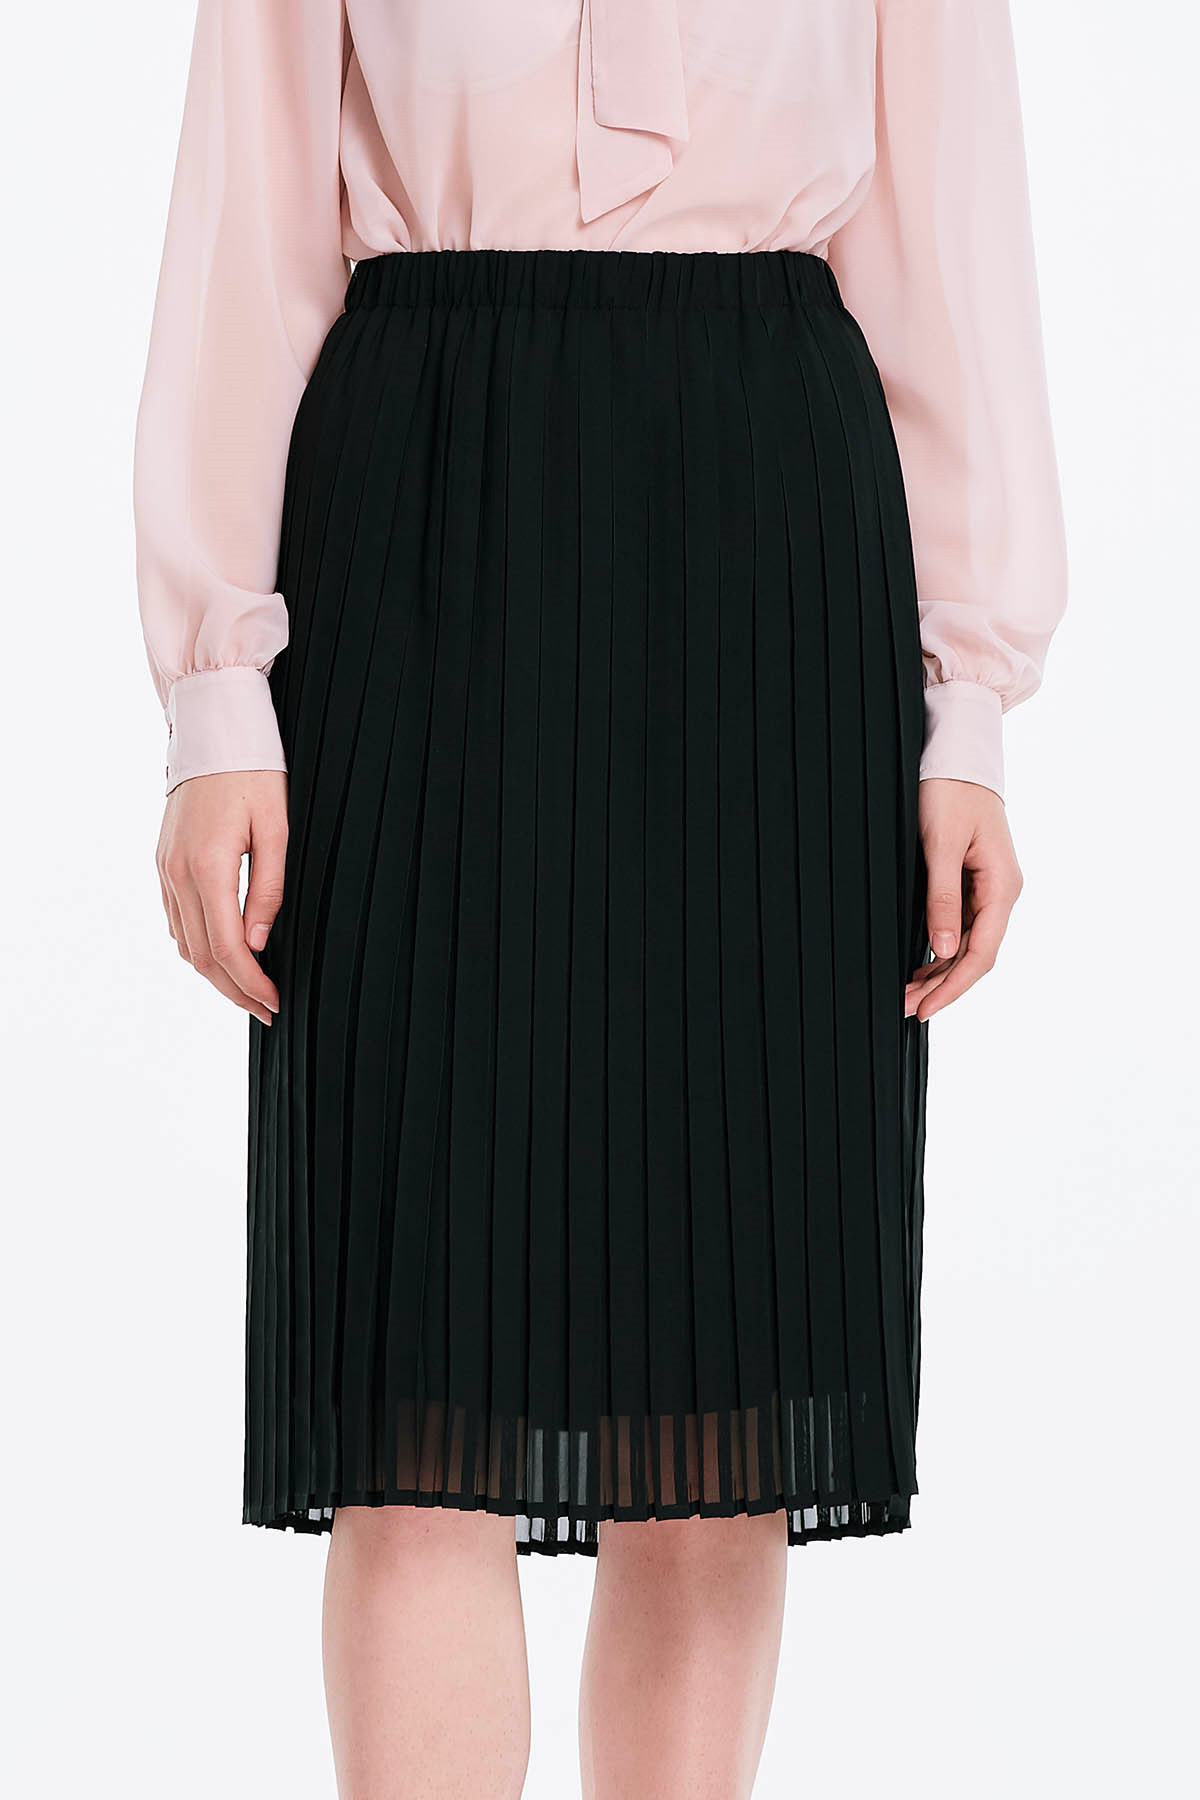 Below the knee pleated black skirt , photo 1